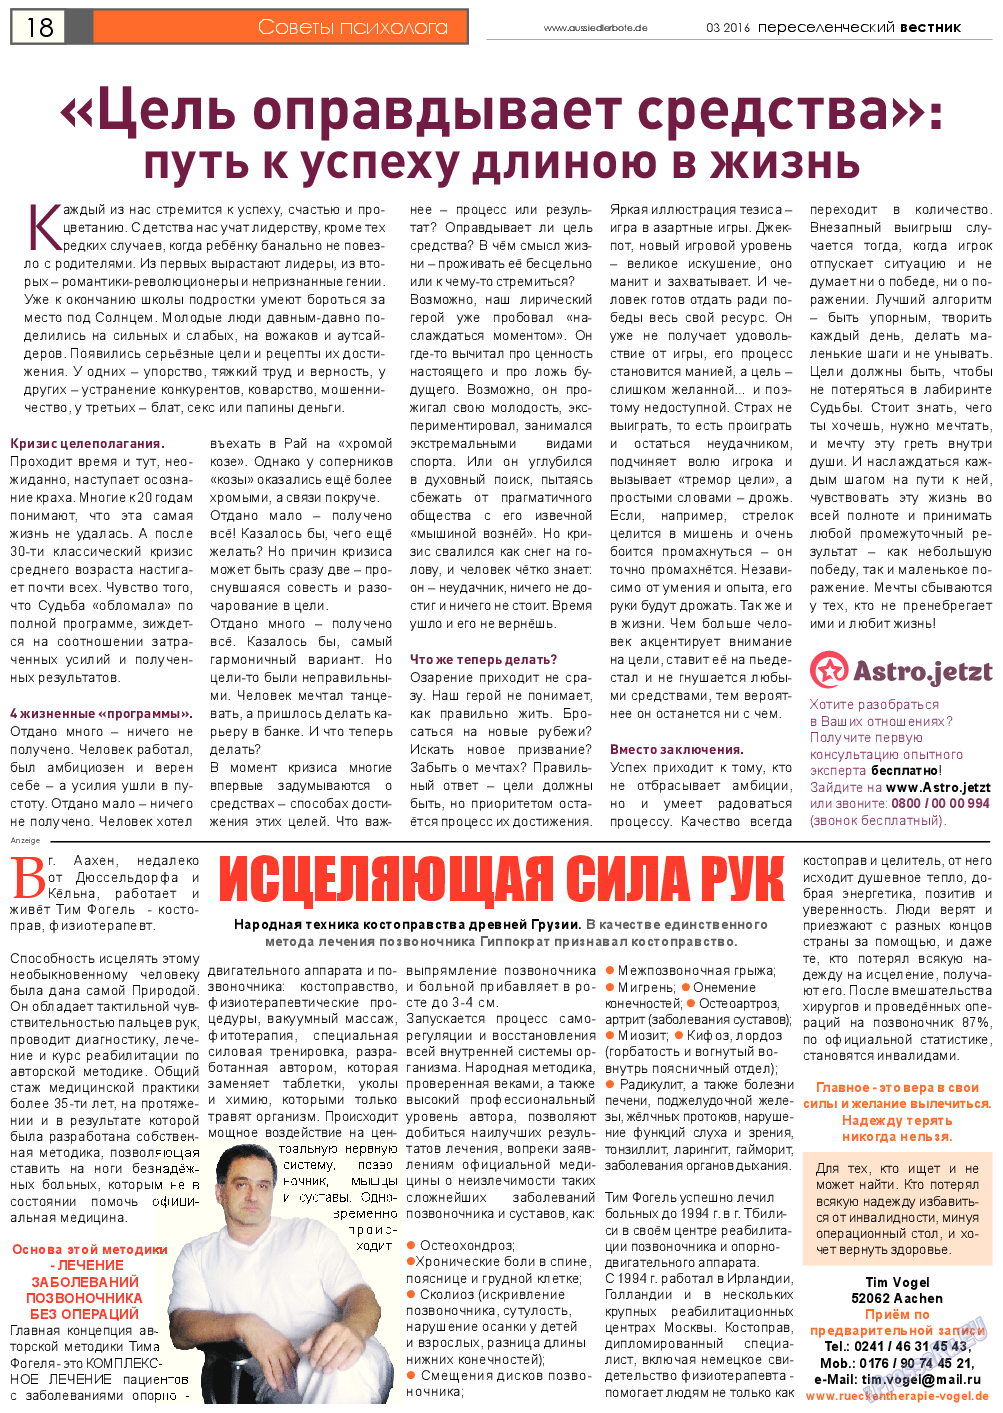 Переселенческий вестник, газета. 2016 №3 стр.18